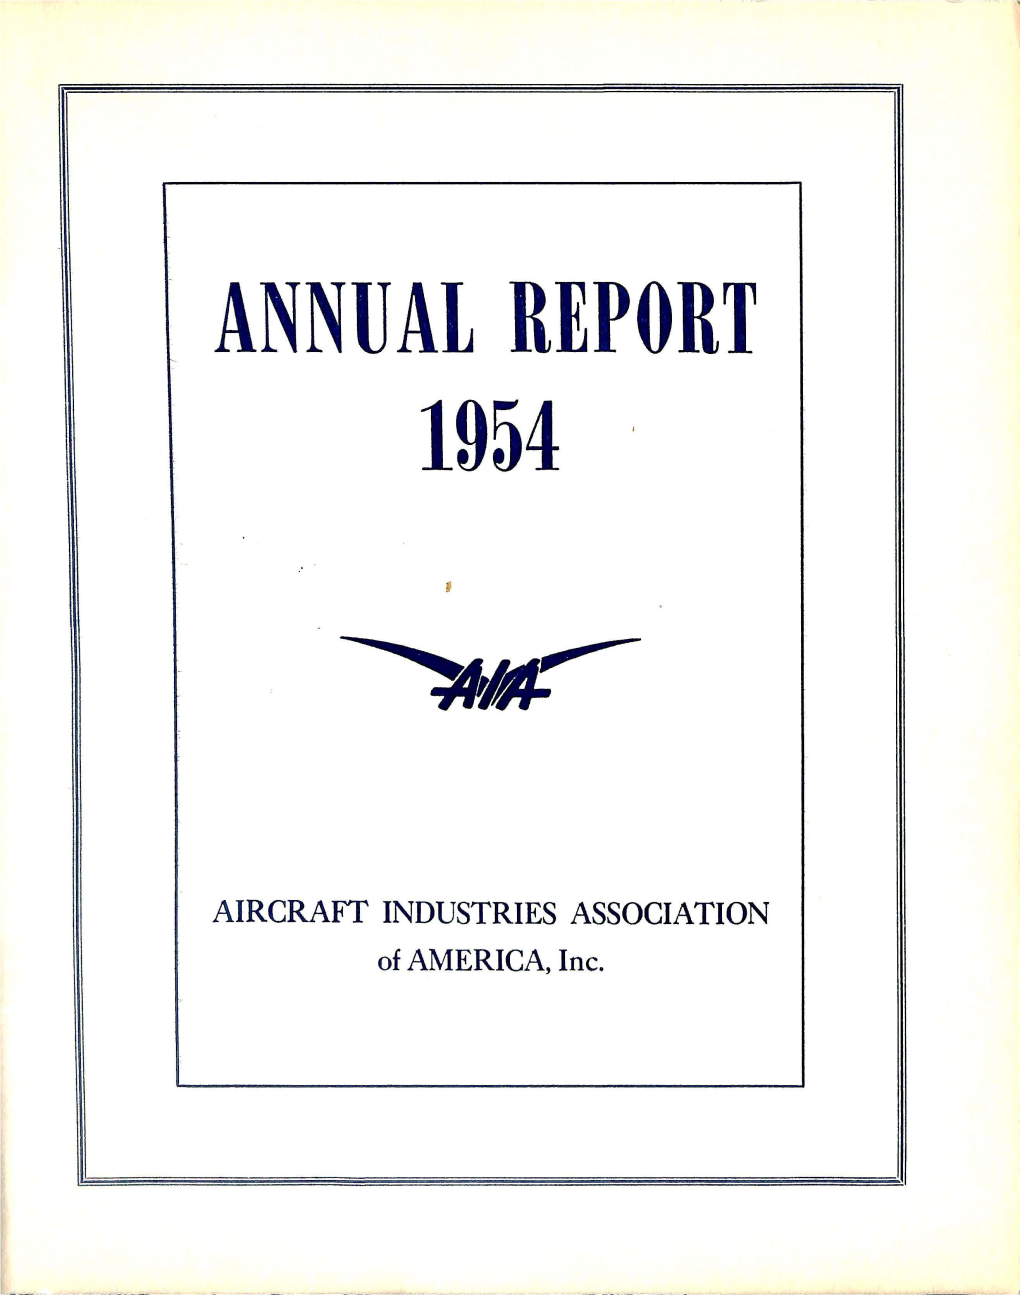 AIA 1954 Annual Report